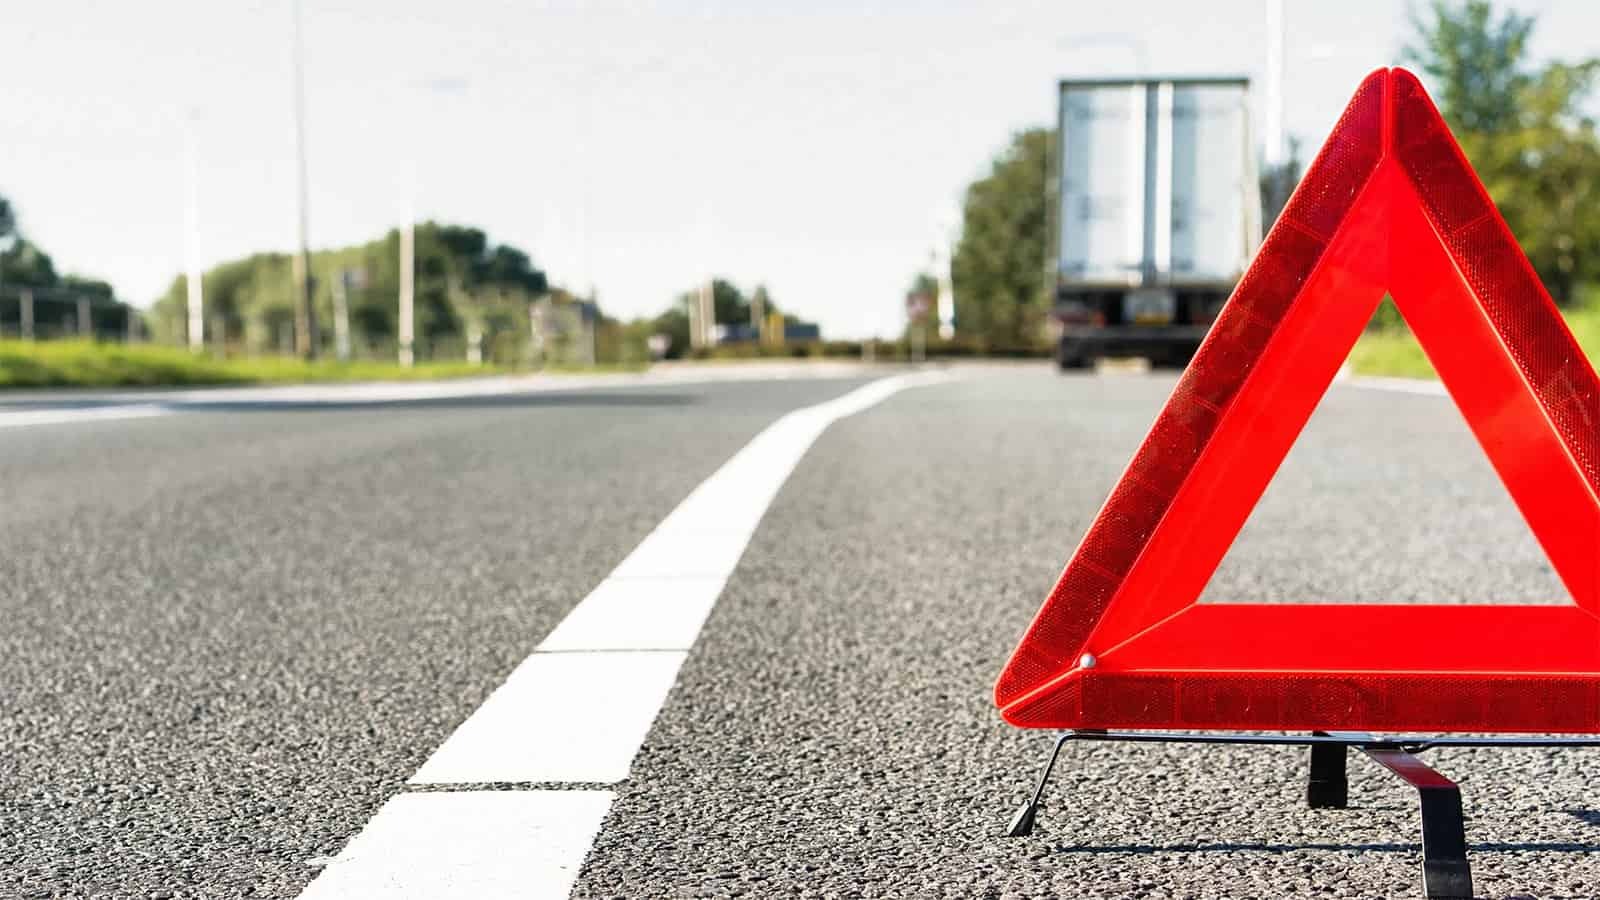 Importance of Roadside Assistance in an Emergency Breakdown